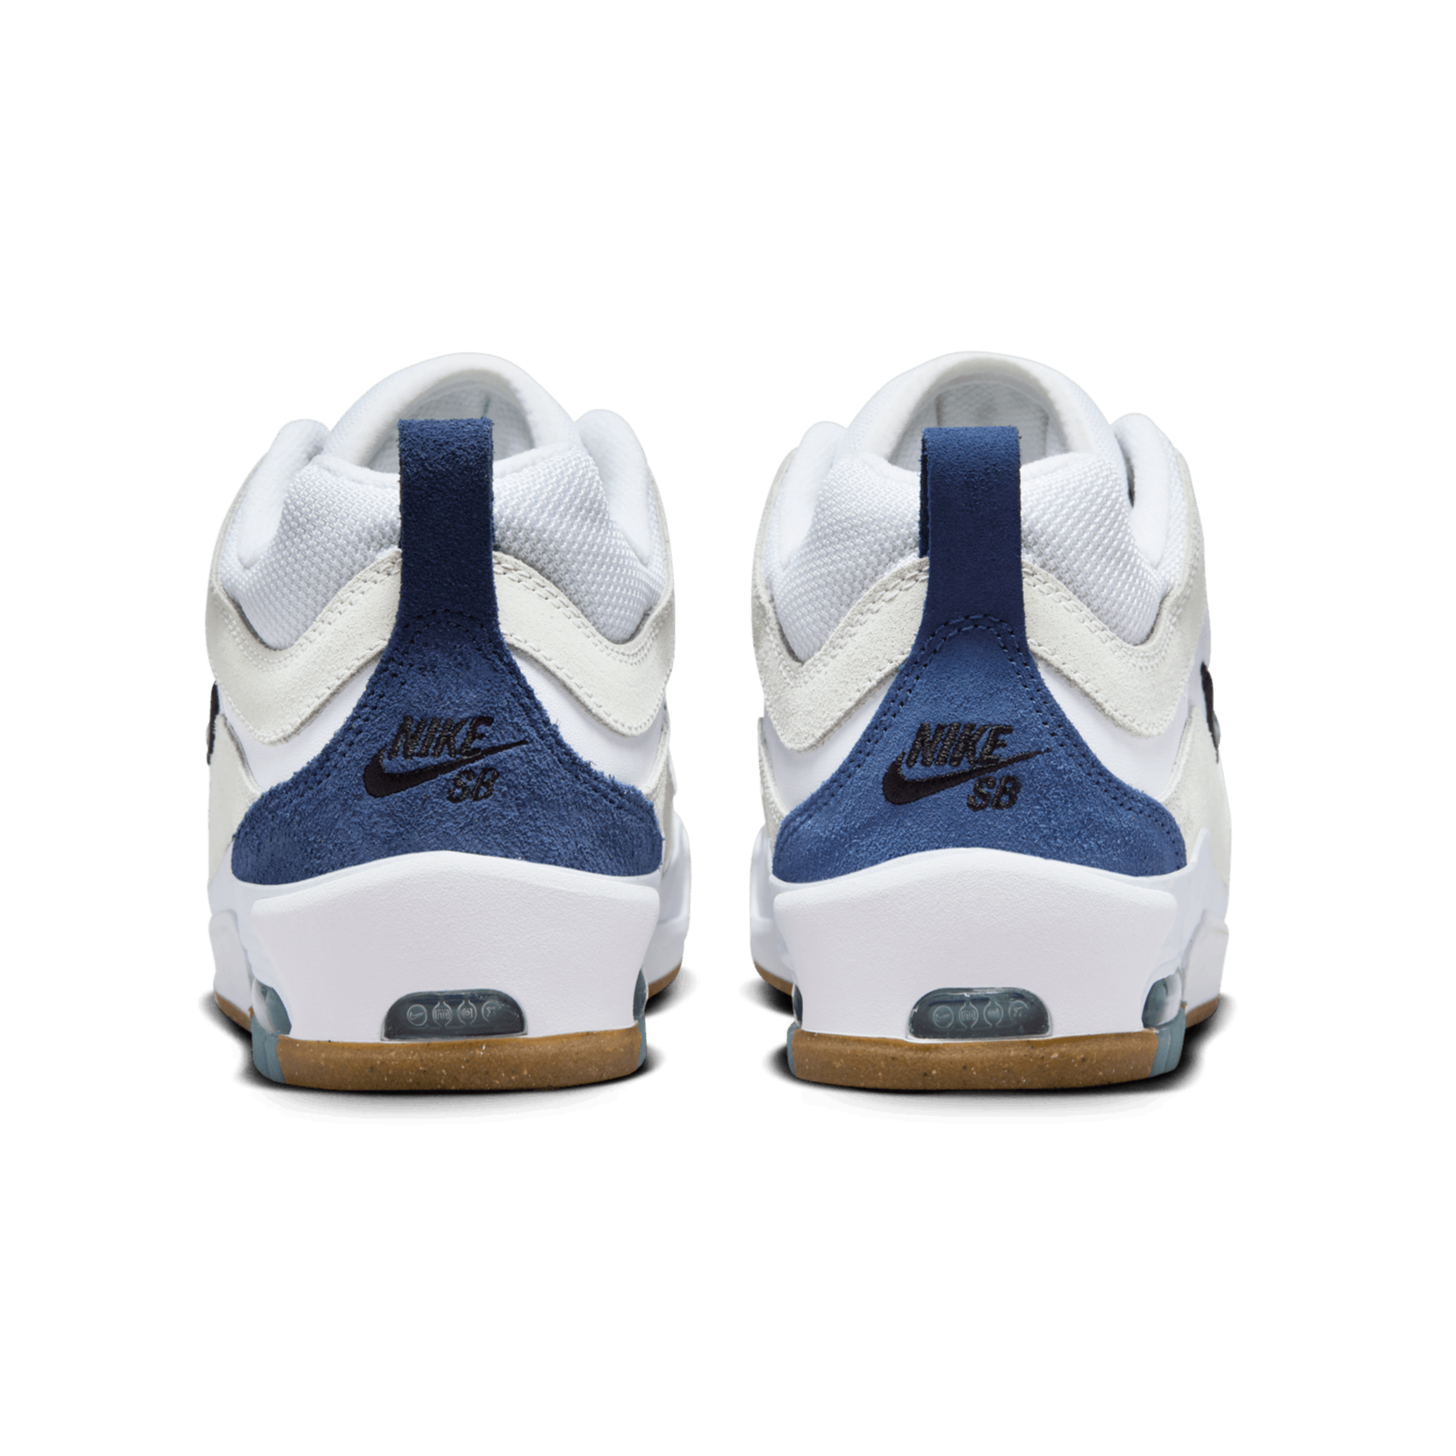 White/Navy Air Max Ishod 2 Nike SB Skate Shoe Back